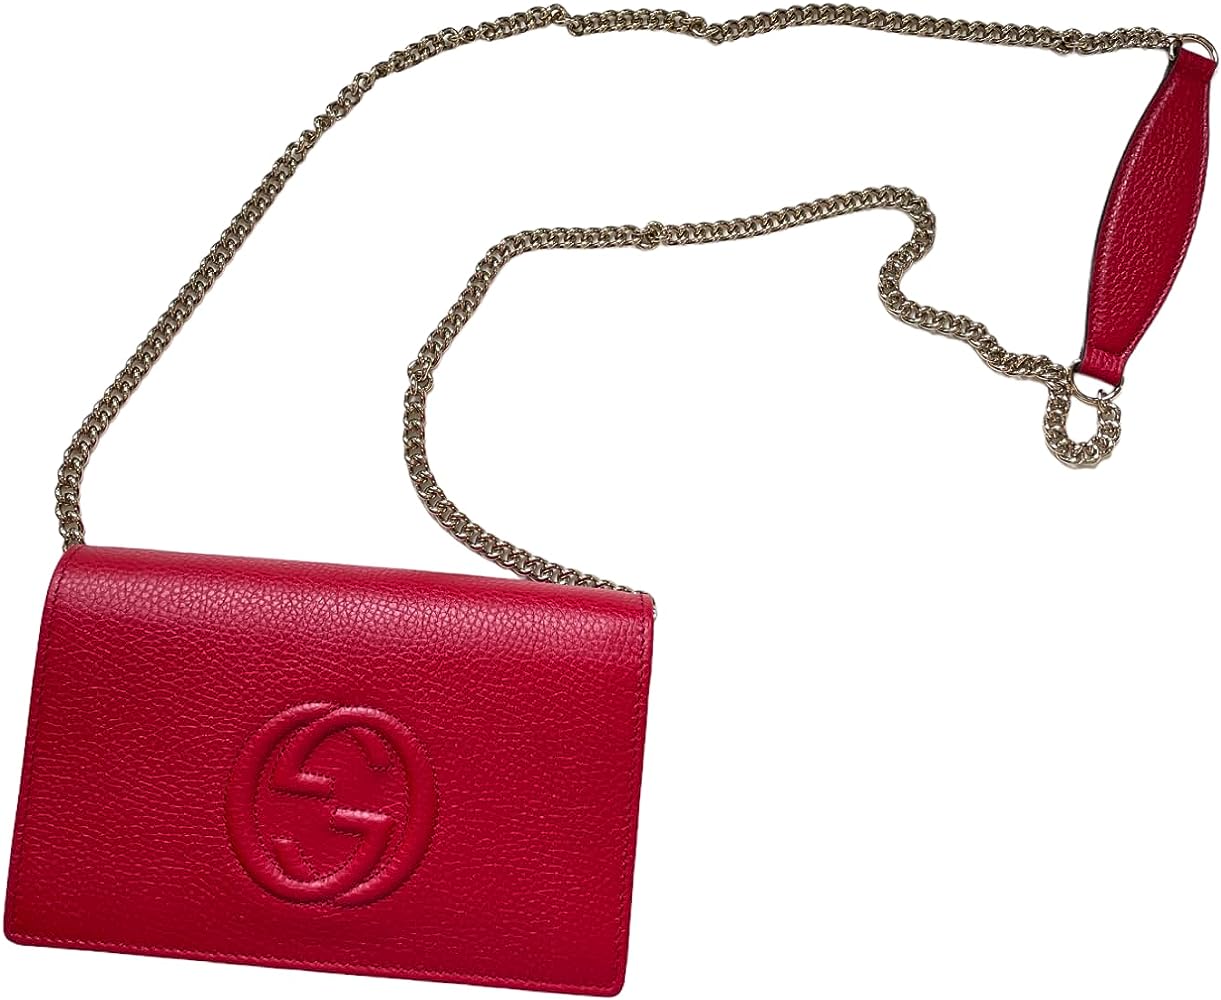 Gucci Soho Leather Clutch Envelope Red Bag Tassel Handbag Bag Purse ...